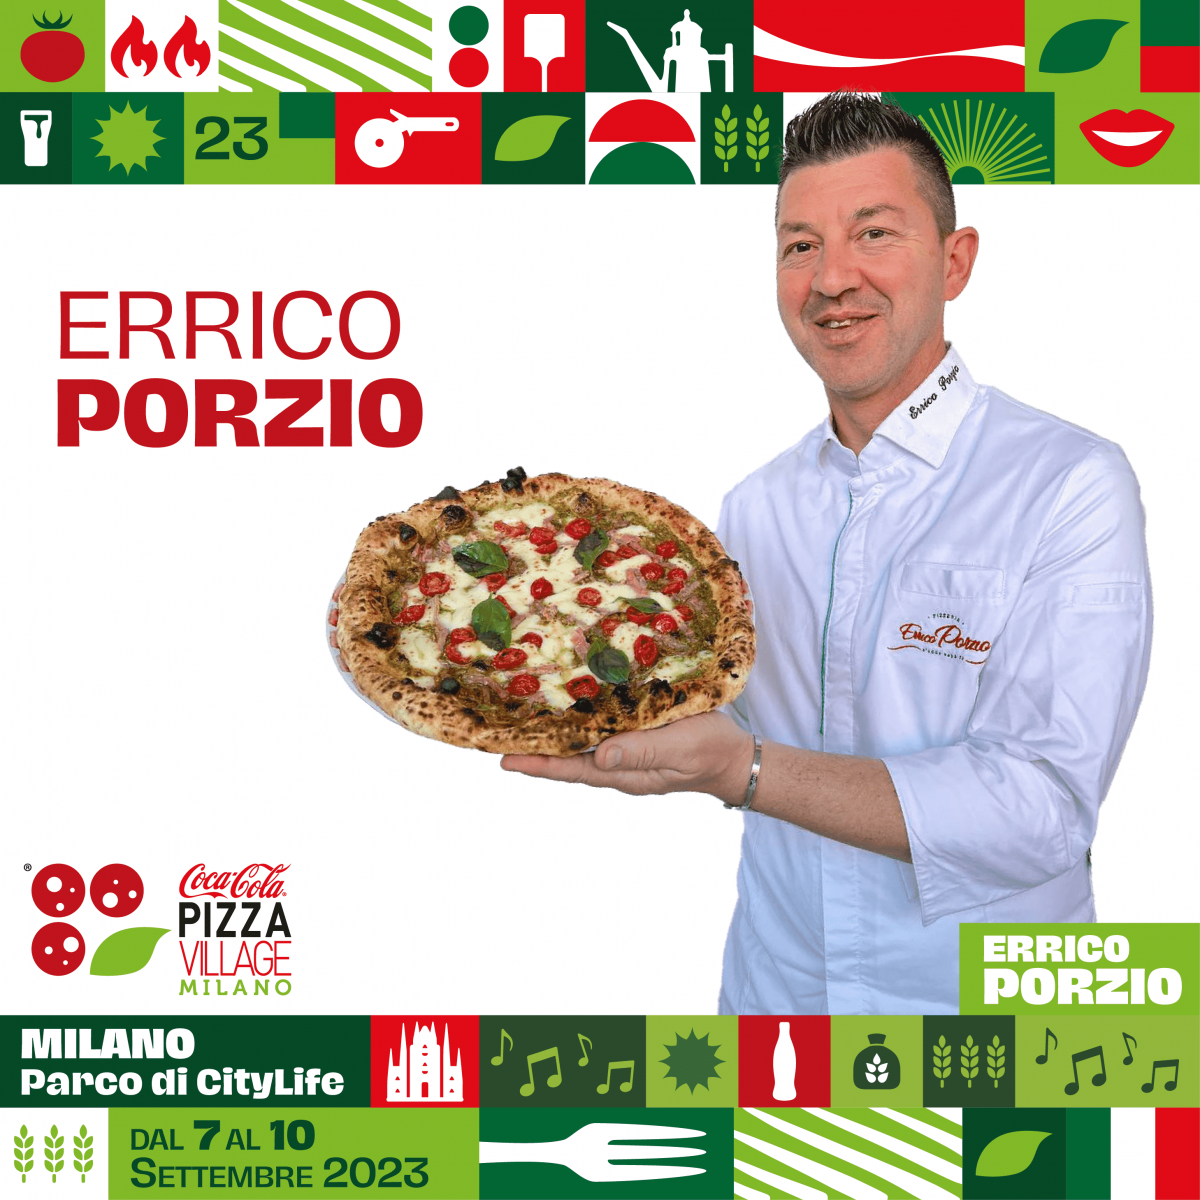 Citterio official sponsor della prima edizione del Coca-Cola Pizza Village Milano